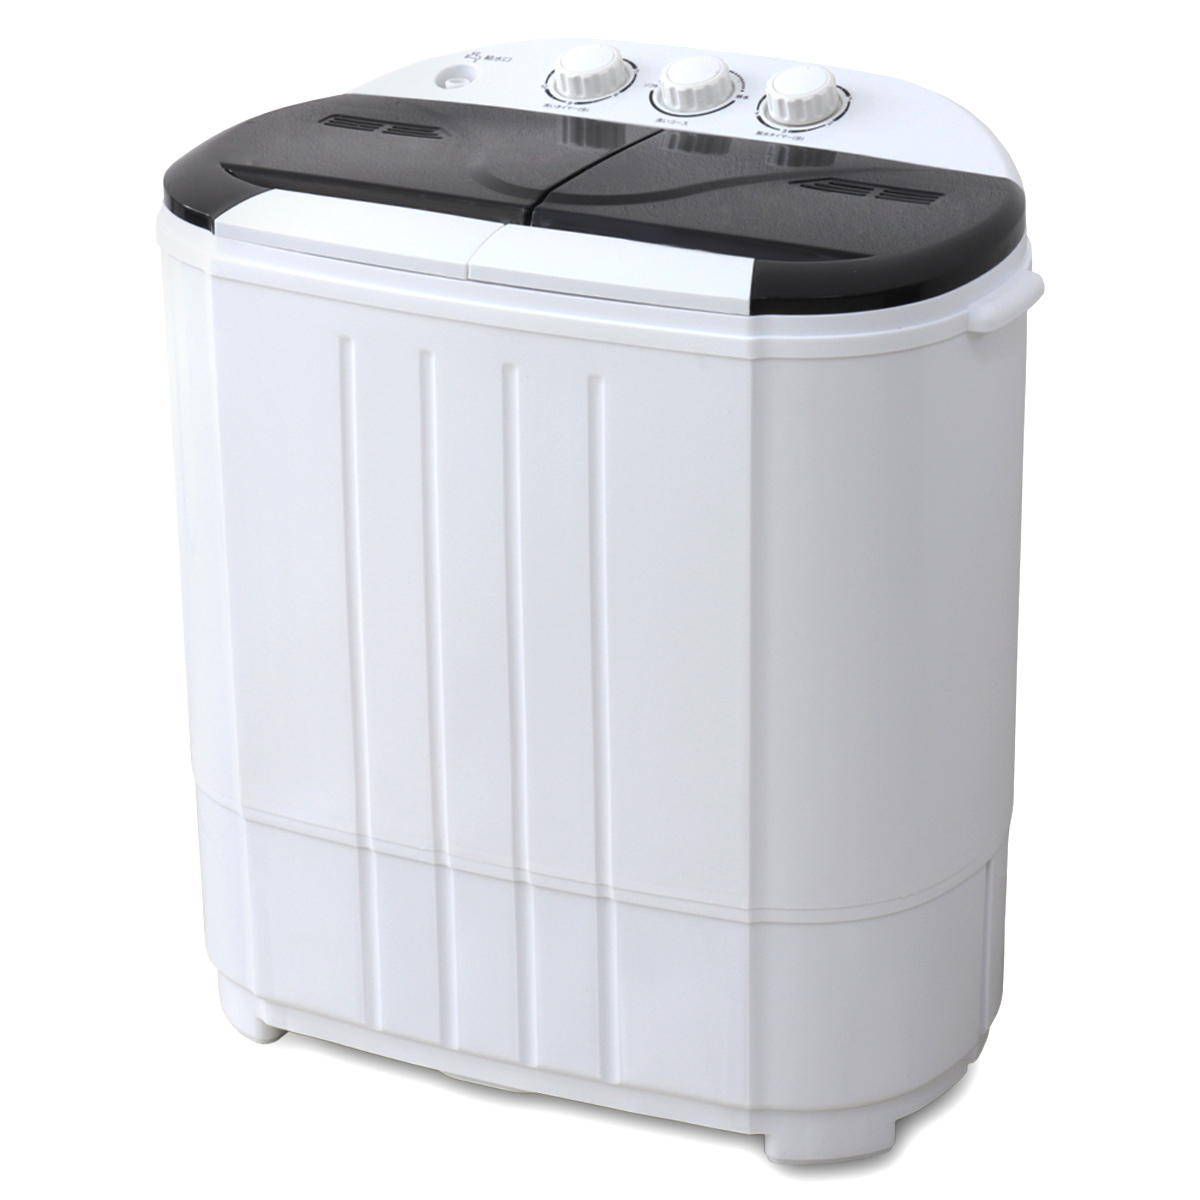 小型洗濯機 ミニ洗濯機 二層式洗濯機 別洗い 3.6kg 脱水機能付 洗濯機 分け洗い コンパクト